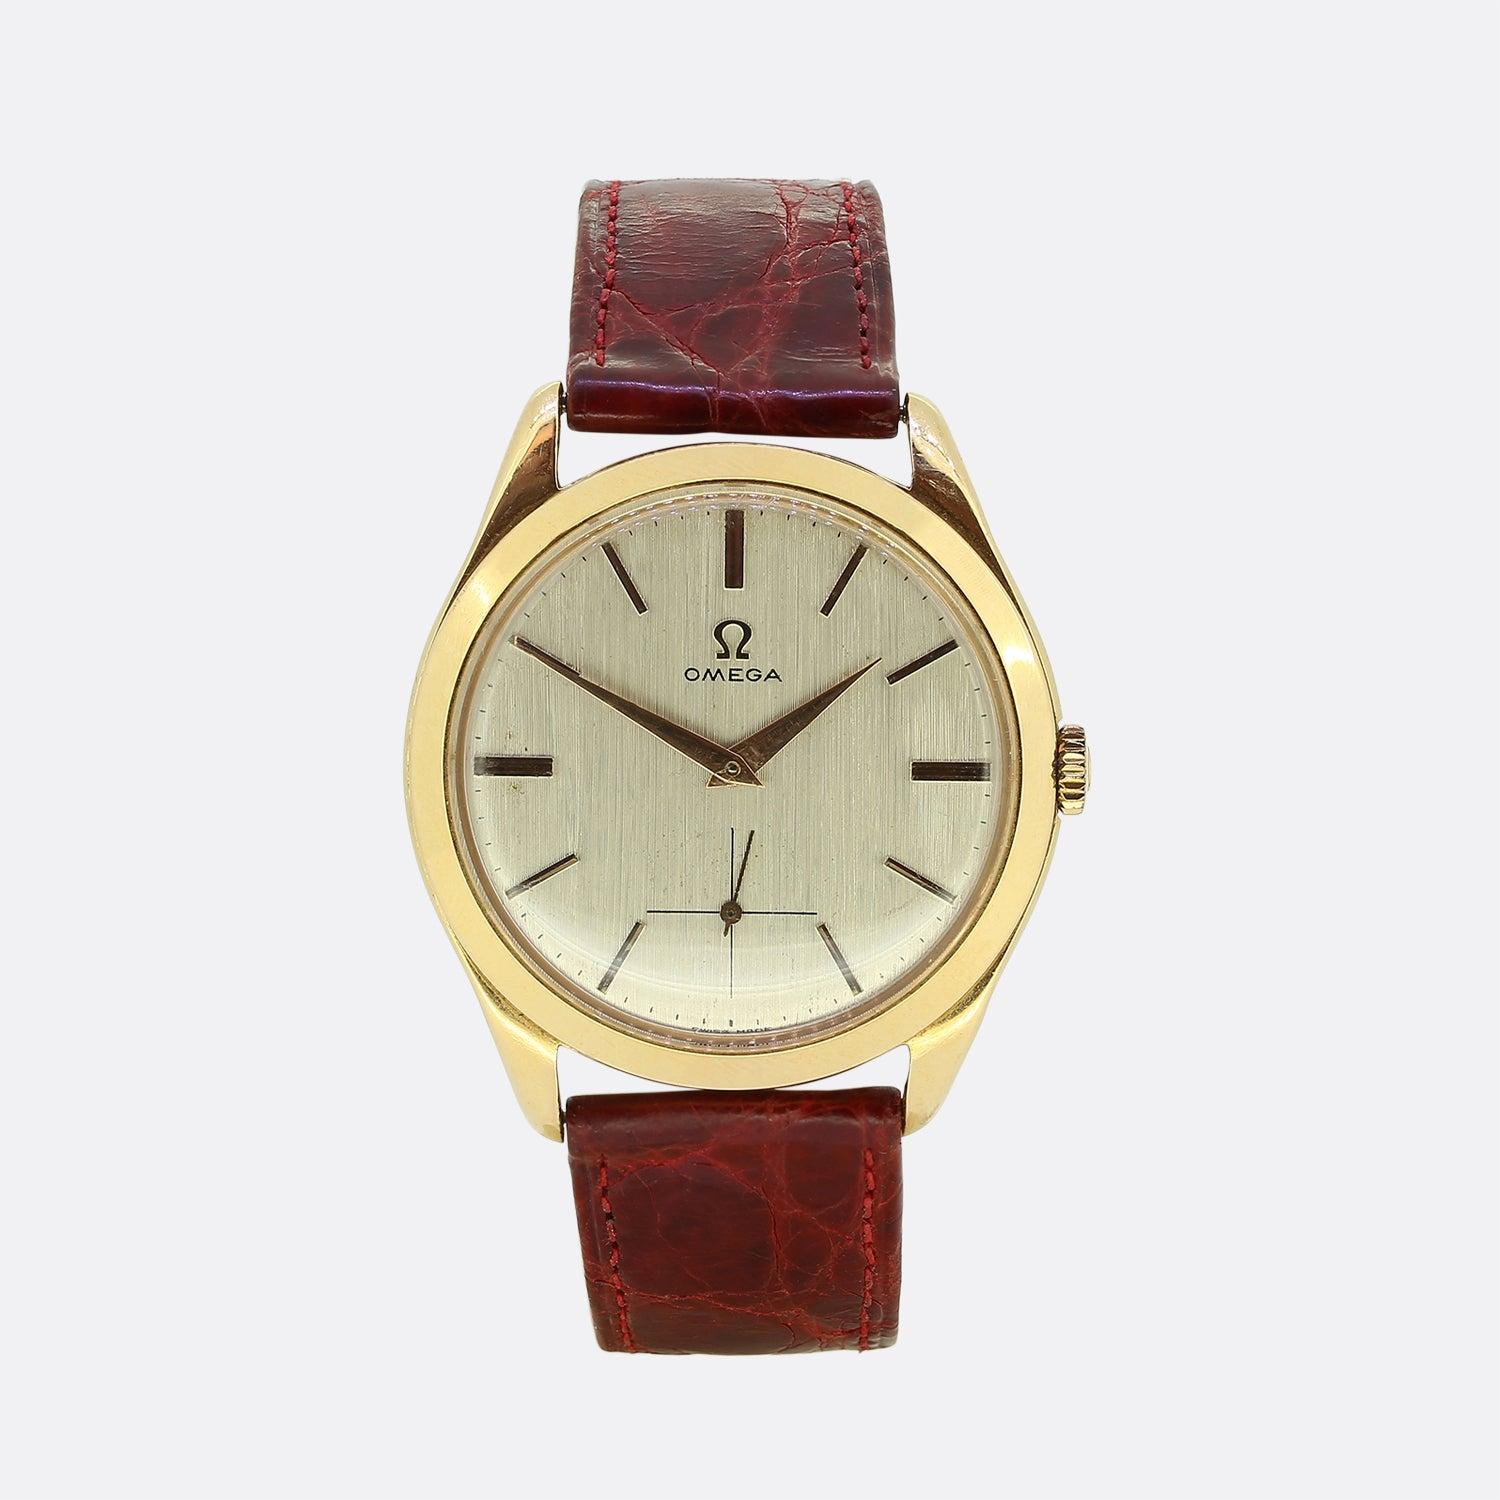 Nous avons ici une montre magnifiquement conçue par les horlogers de renommée mondiale, Omega. Un design vintage classique offre un cadran blanc cassé qui accueille des bâtons d'heures en or, la signature Omega et un cadran auxiliaire, le tout